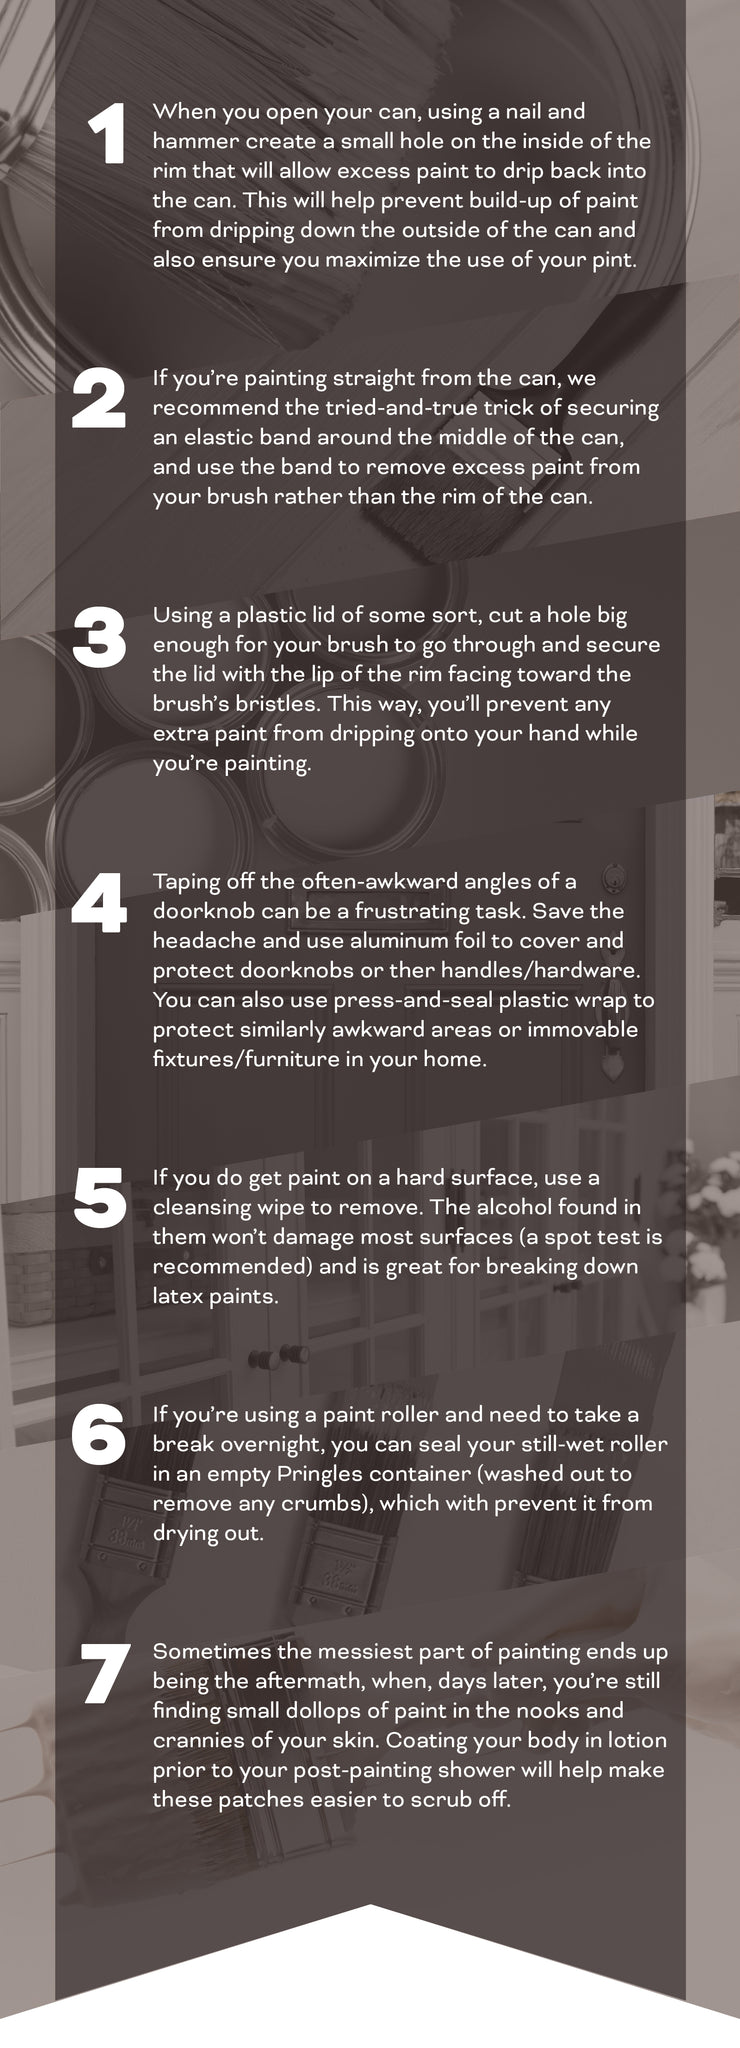 Tips & Tricks: Painting Edition - Envy Paint & Design LTD